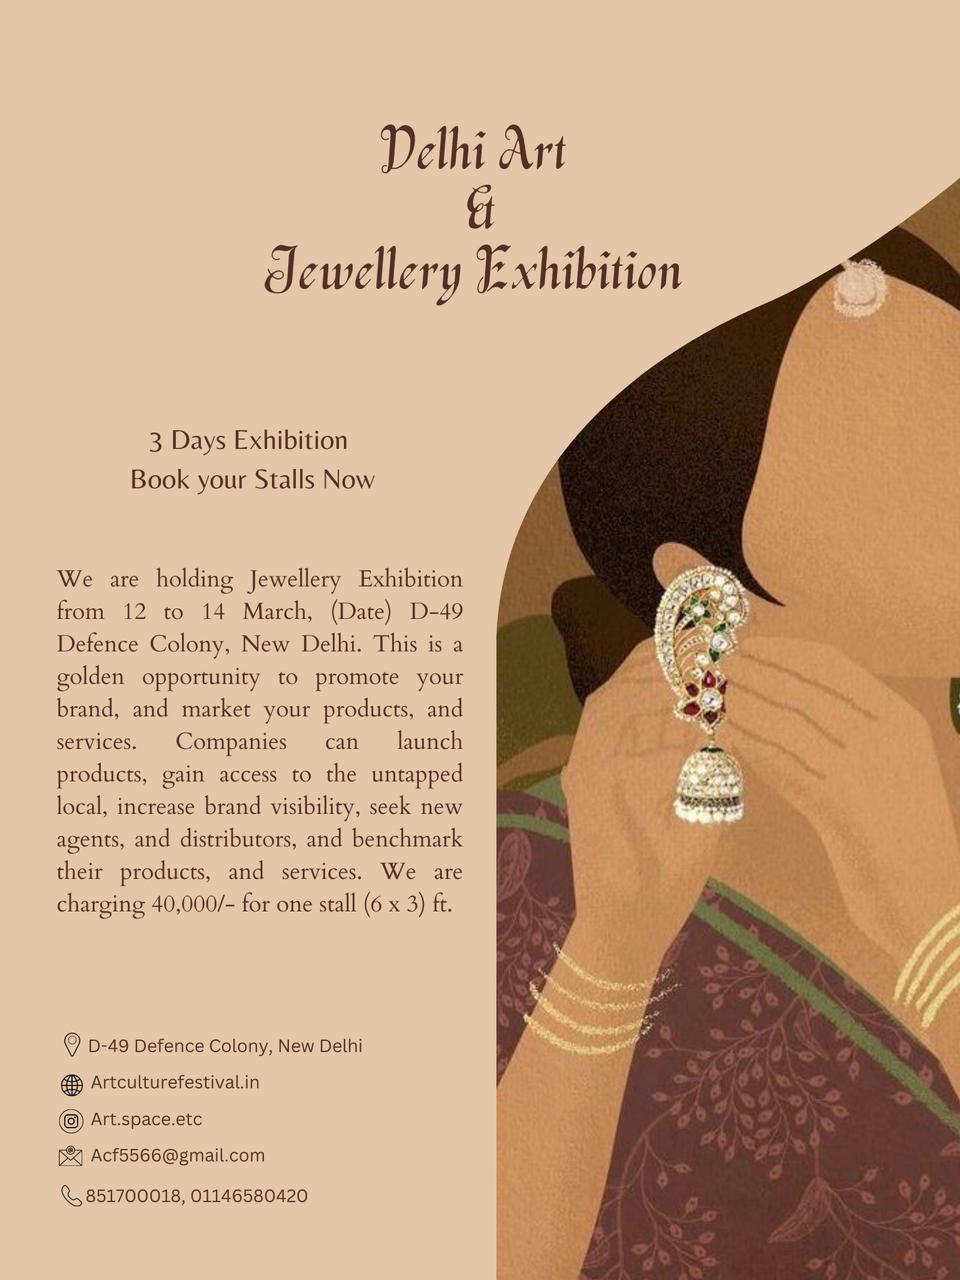 Delhi Art Jewellery Exhibition, South Delhi, Delhi, India